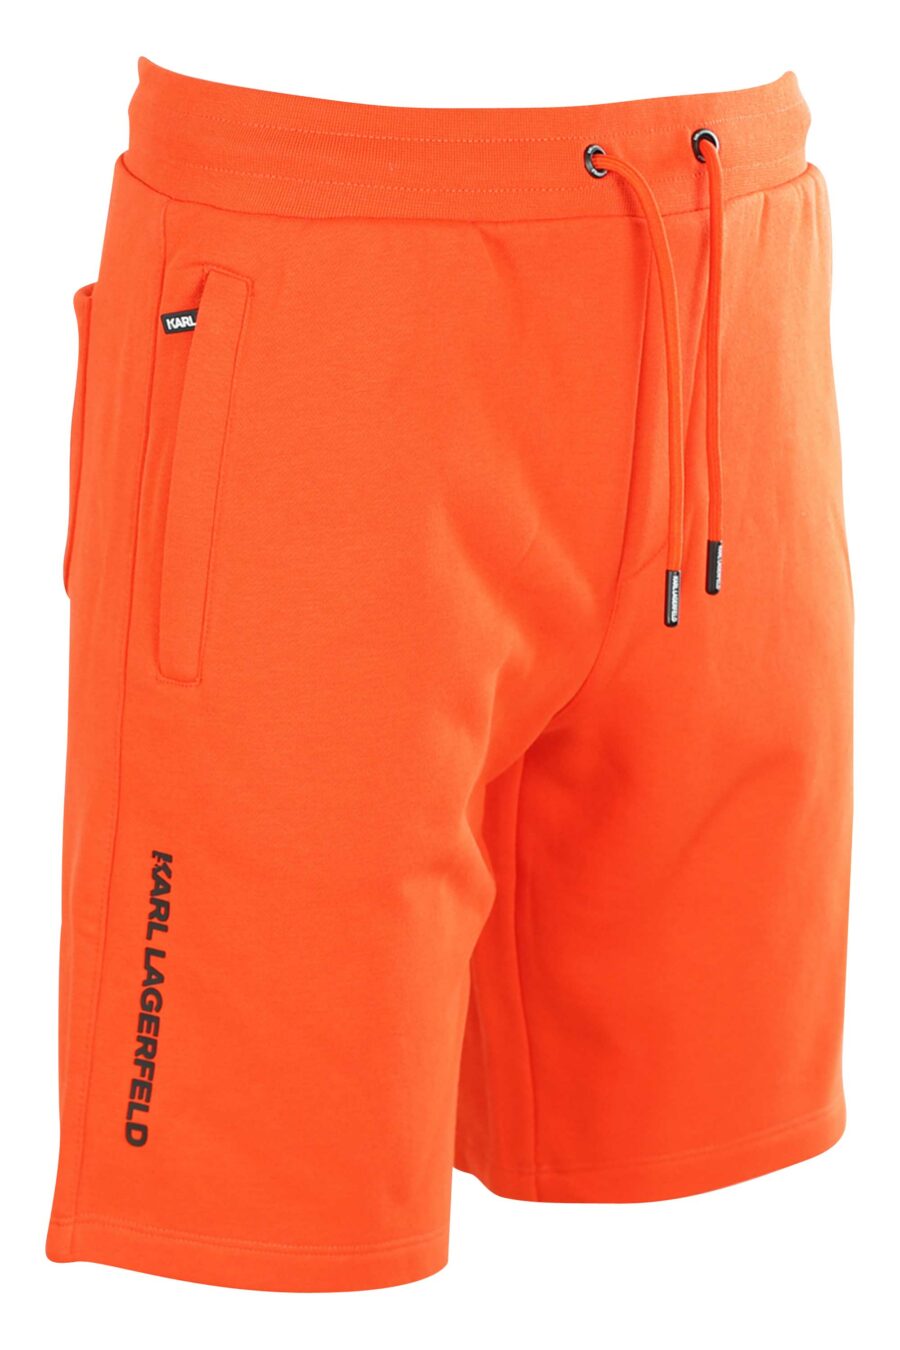 Pantalón de chándal corto naranja con logo de goma - 4062226266710 2